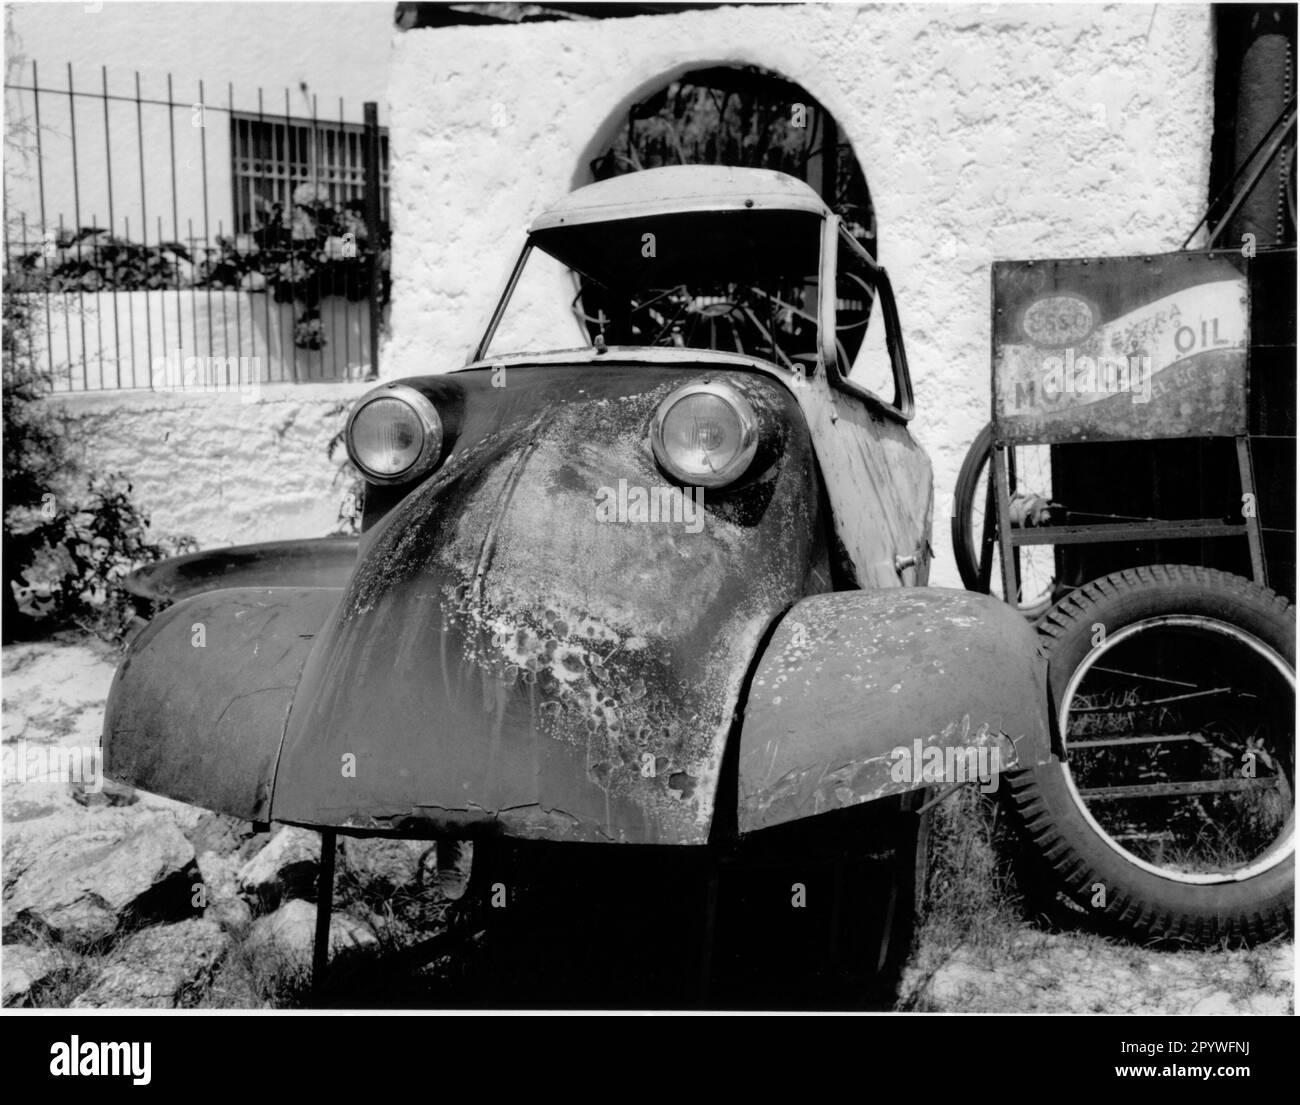 Traffico: Cabina scooter. Relitto di uno scooter Messerschmitt (stazione oldtimer sulla Ruta Interbalnearia, 25 km da Montevideo, Uruguay). Bianco e nero. Foto, 1997. Foto Stock